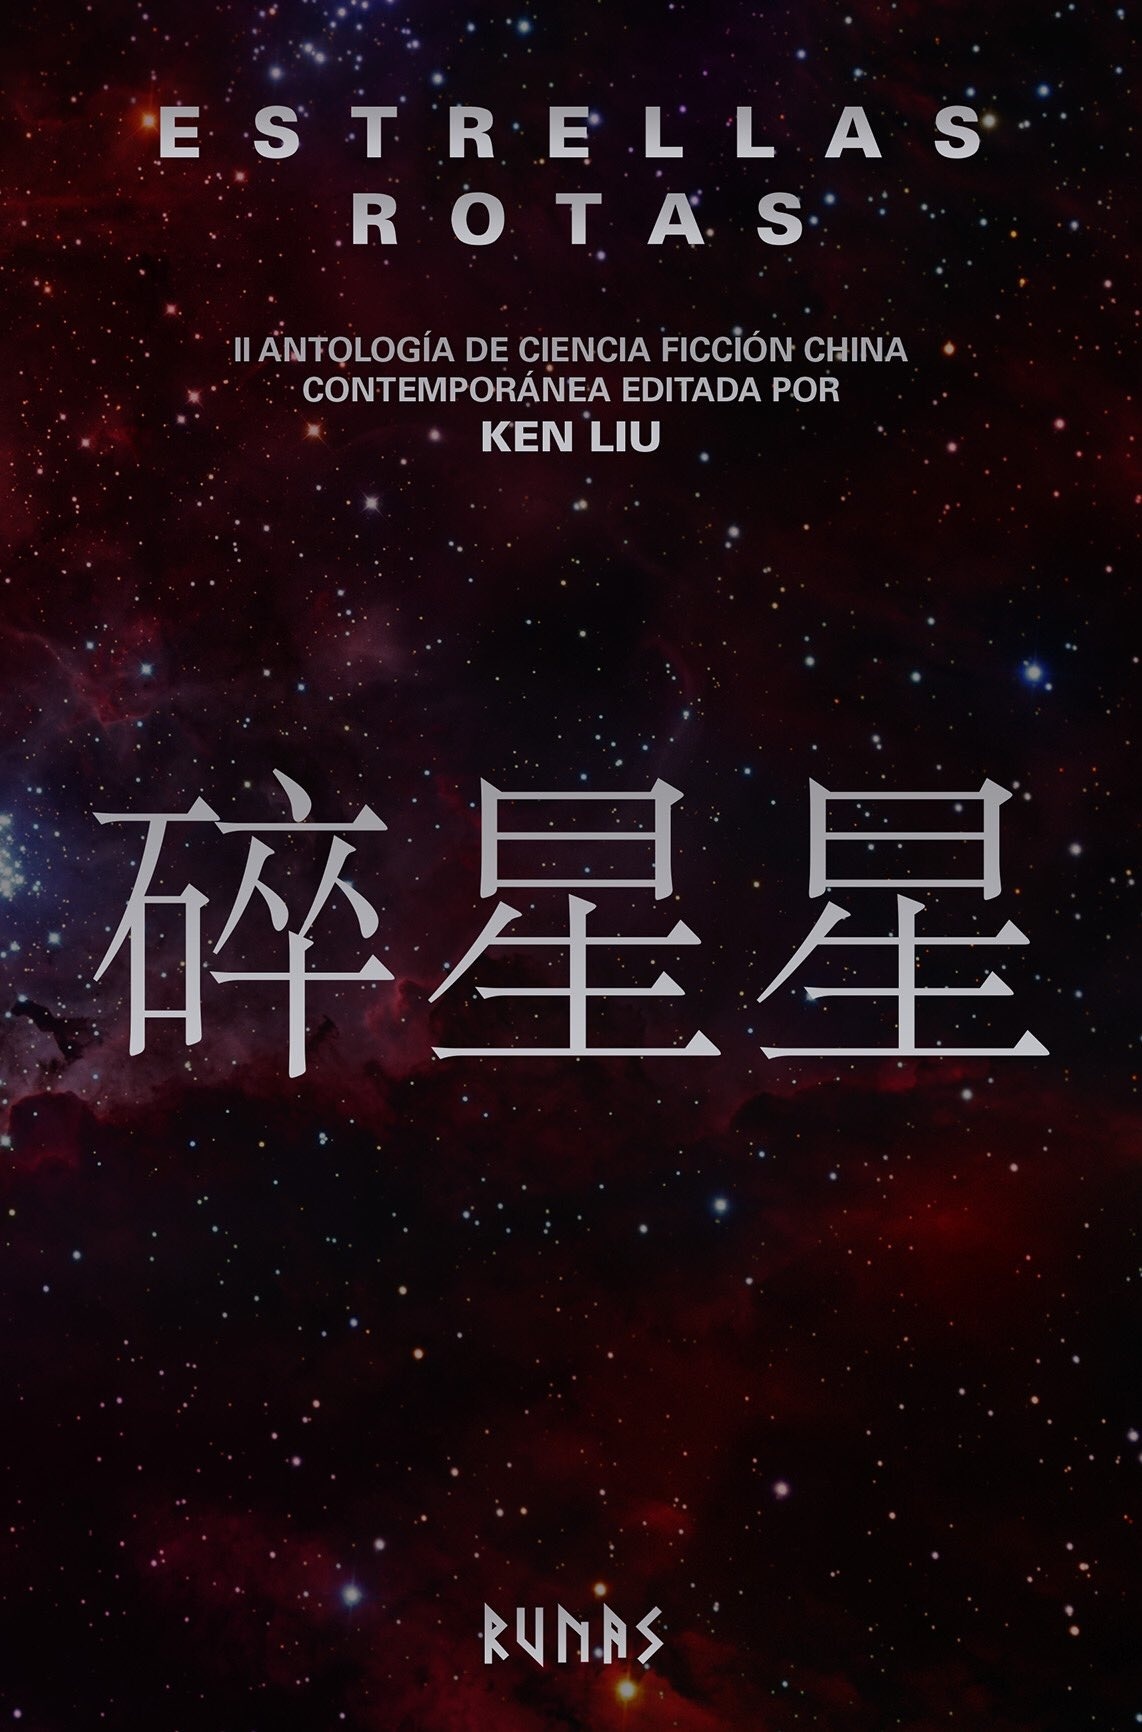 Estrellas rotas "II Antología de la ciencia ficción china contemporánea". 